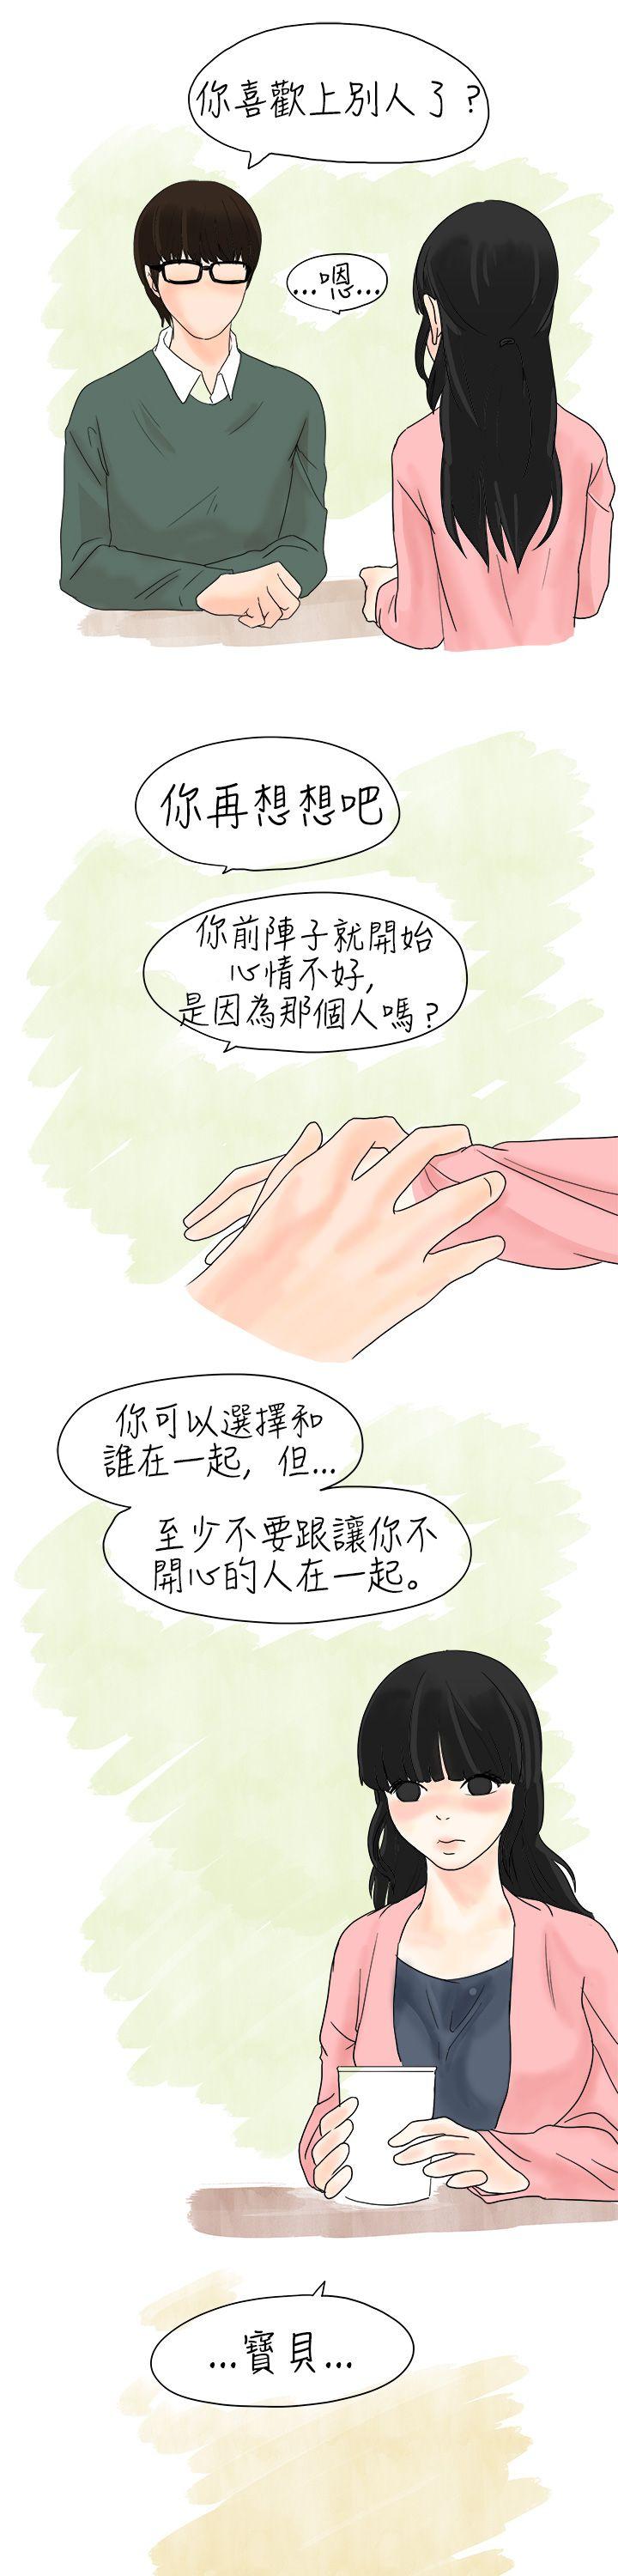 韩国污漫画 秘密Story 遇到史上最烂的无赖(中) 15